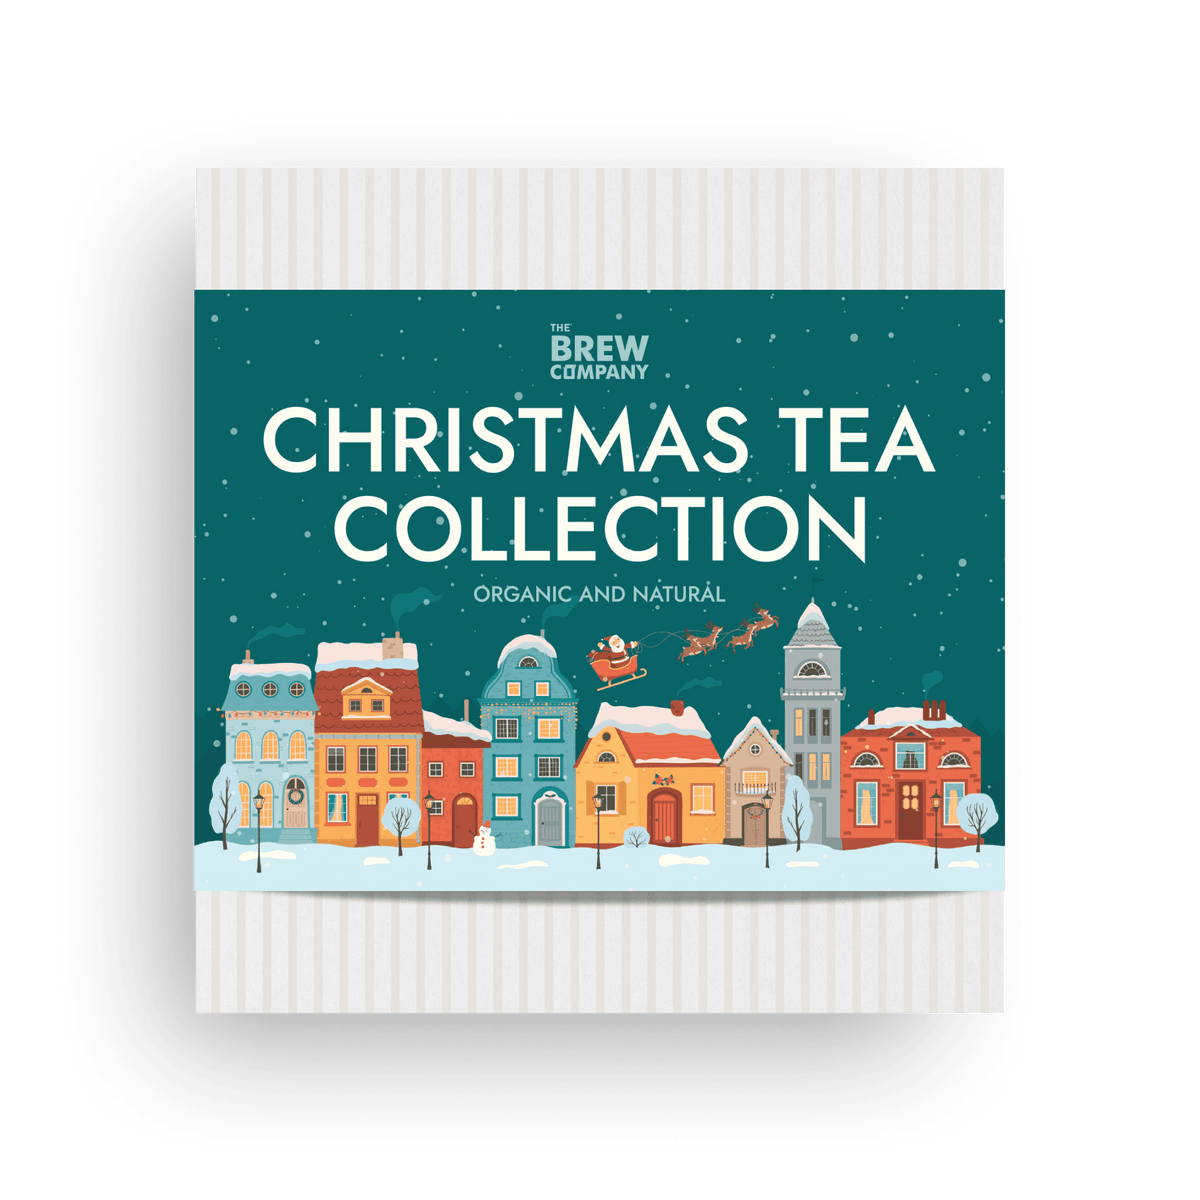 CHRISTMAS TEA COLLECTION